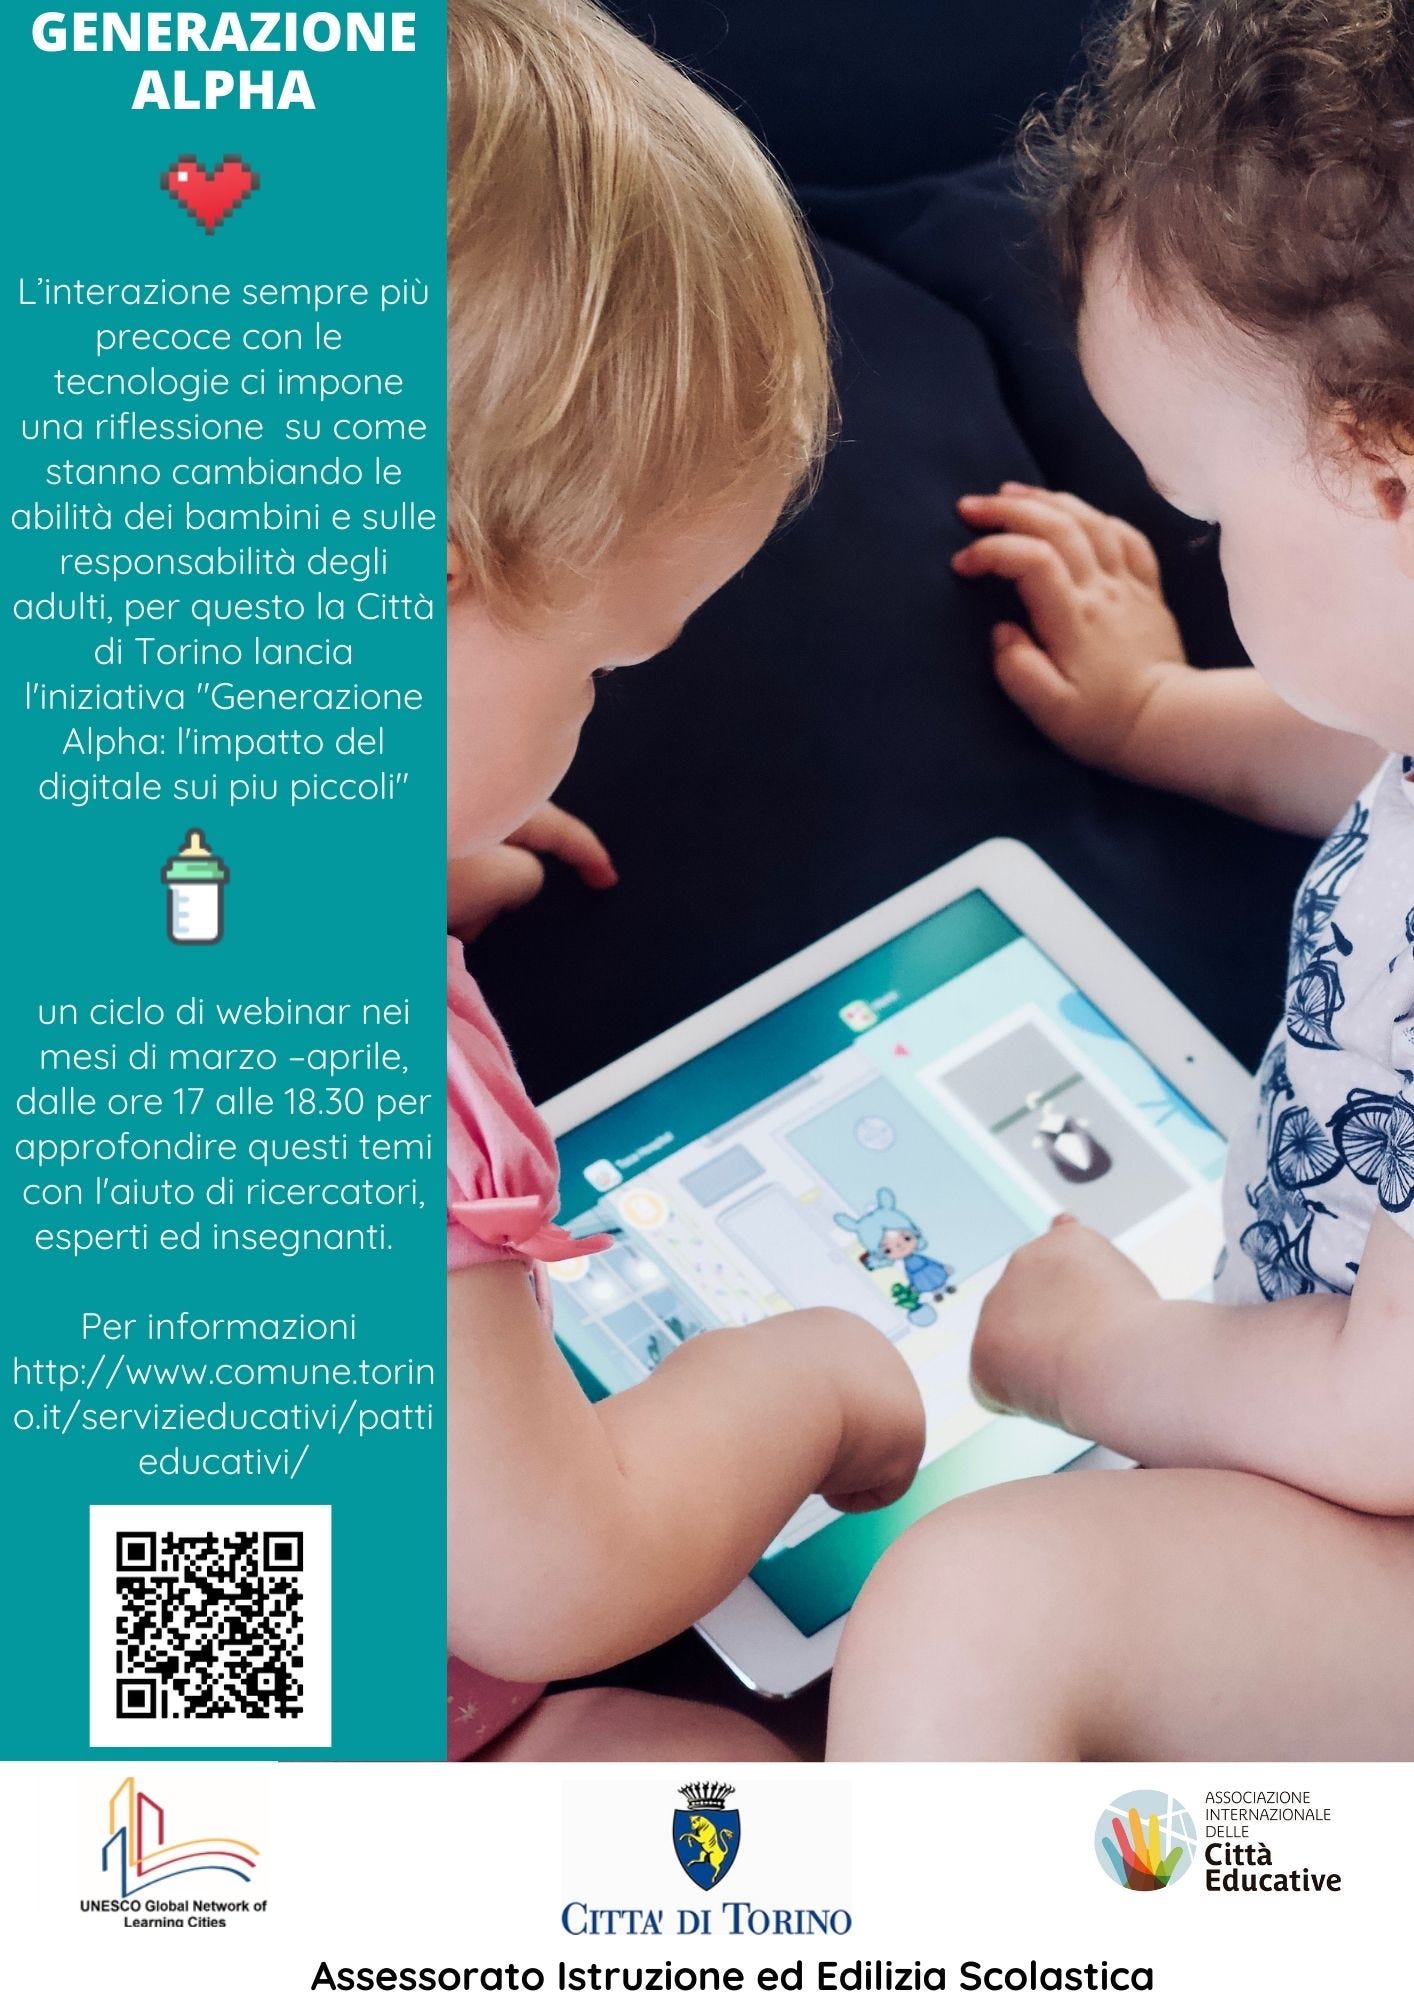 bambini di alcuni mesi che guardano un tablet e indicazioni per iscrizione ai webinar